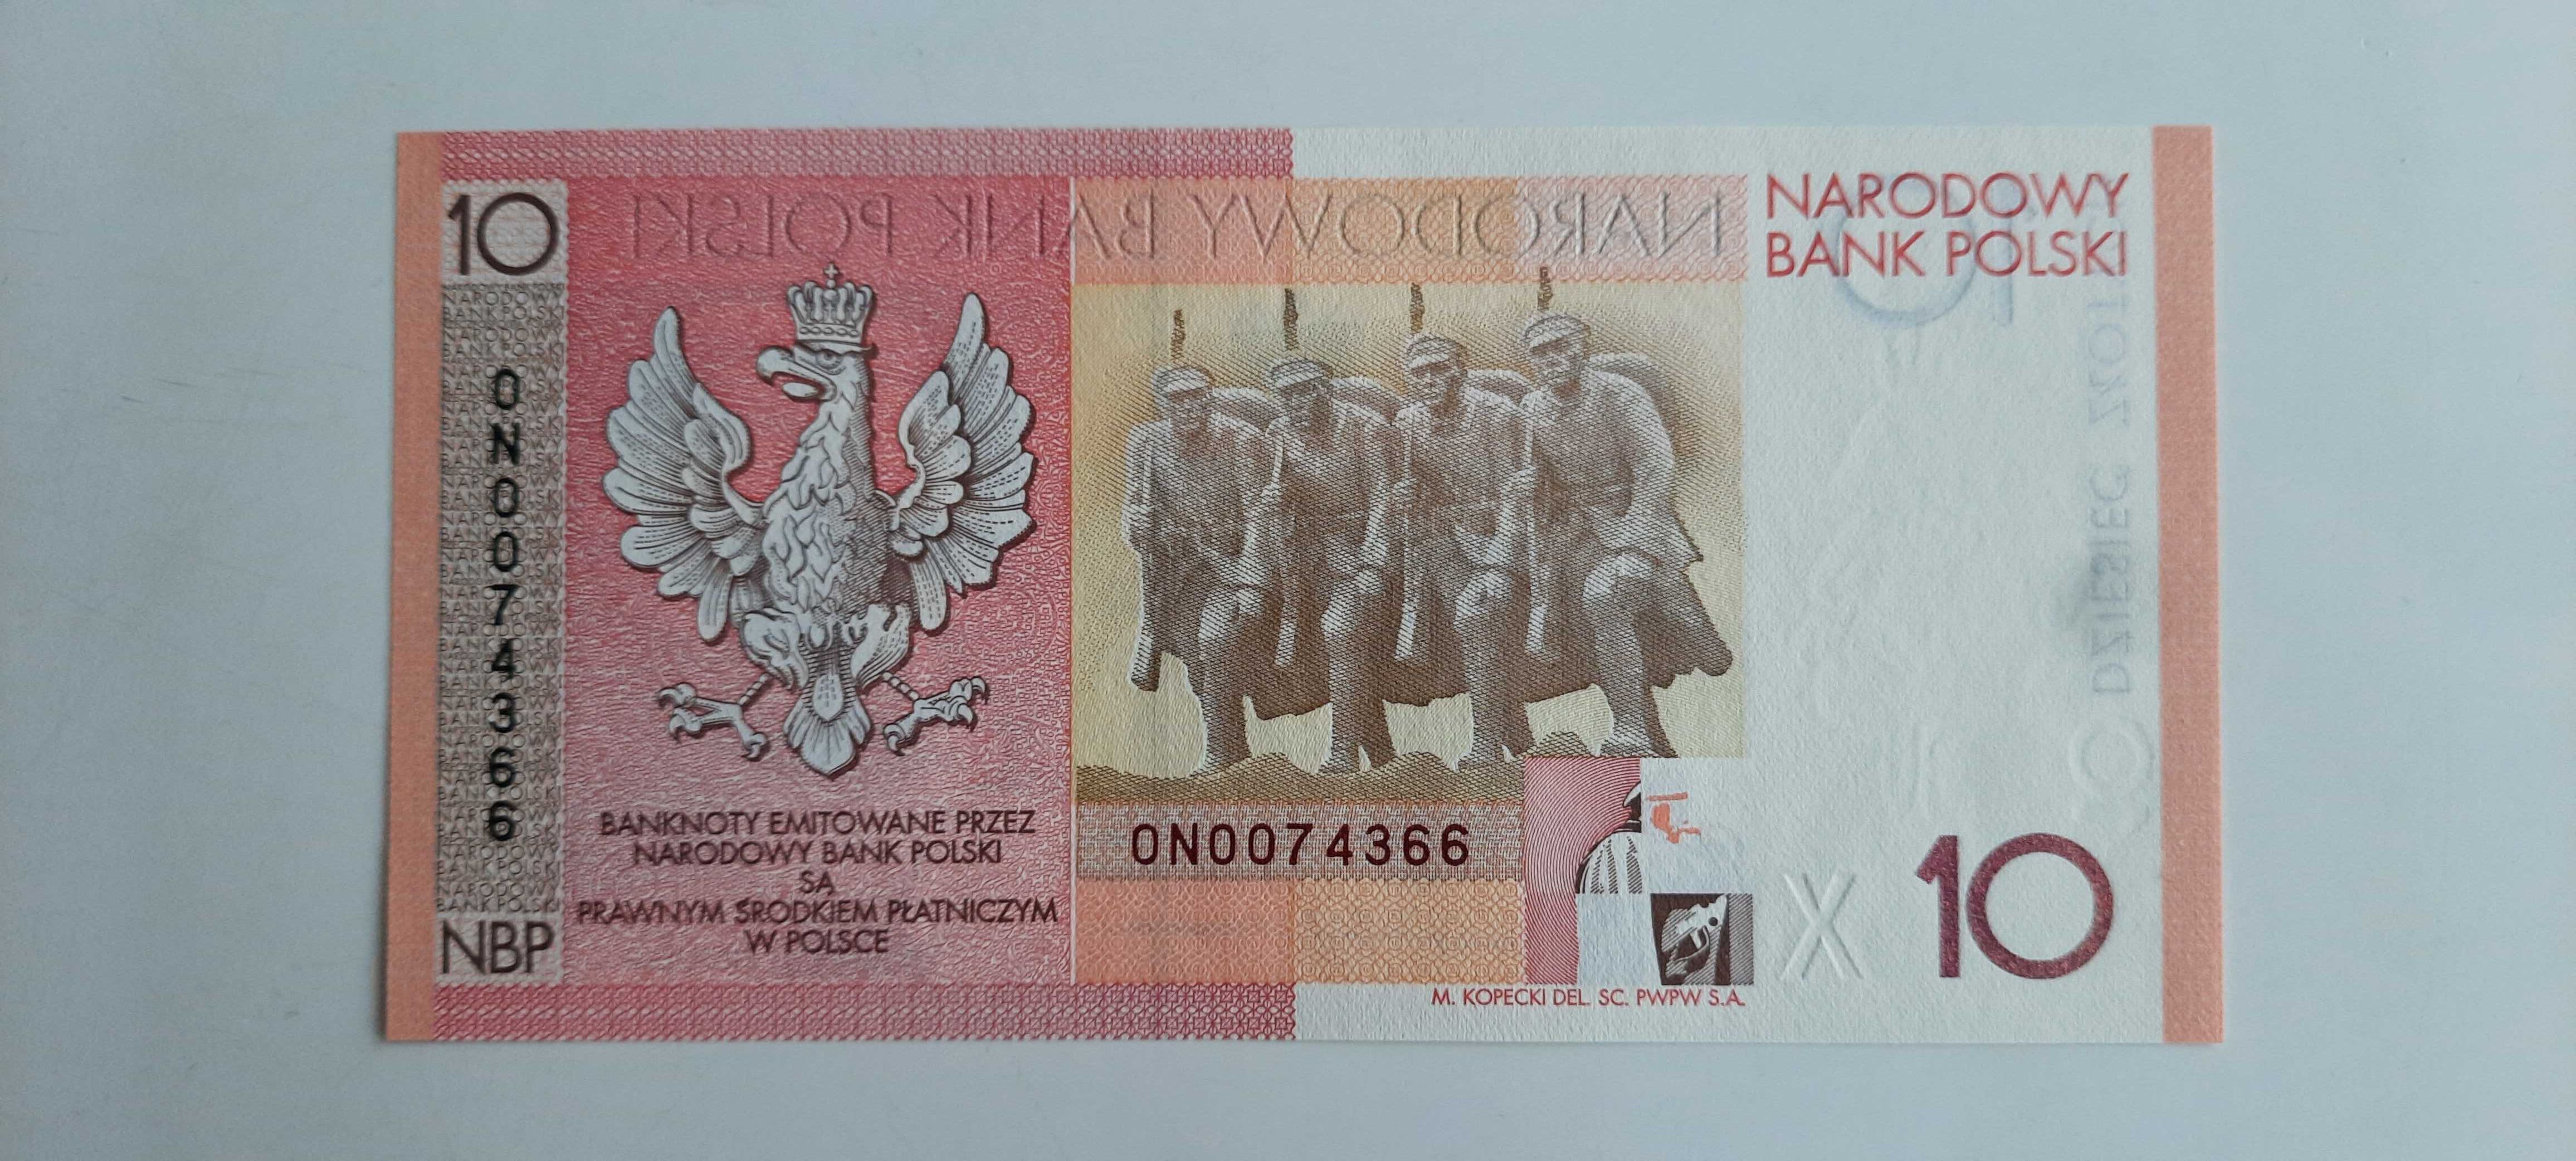 10 zł- 90 rocznica /banknot niepodległościowy/ niepodległość-Piłsudski